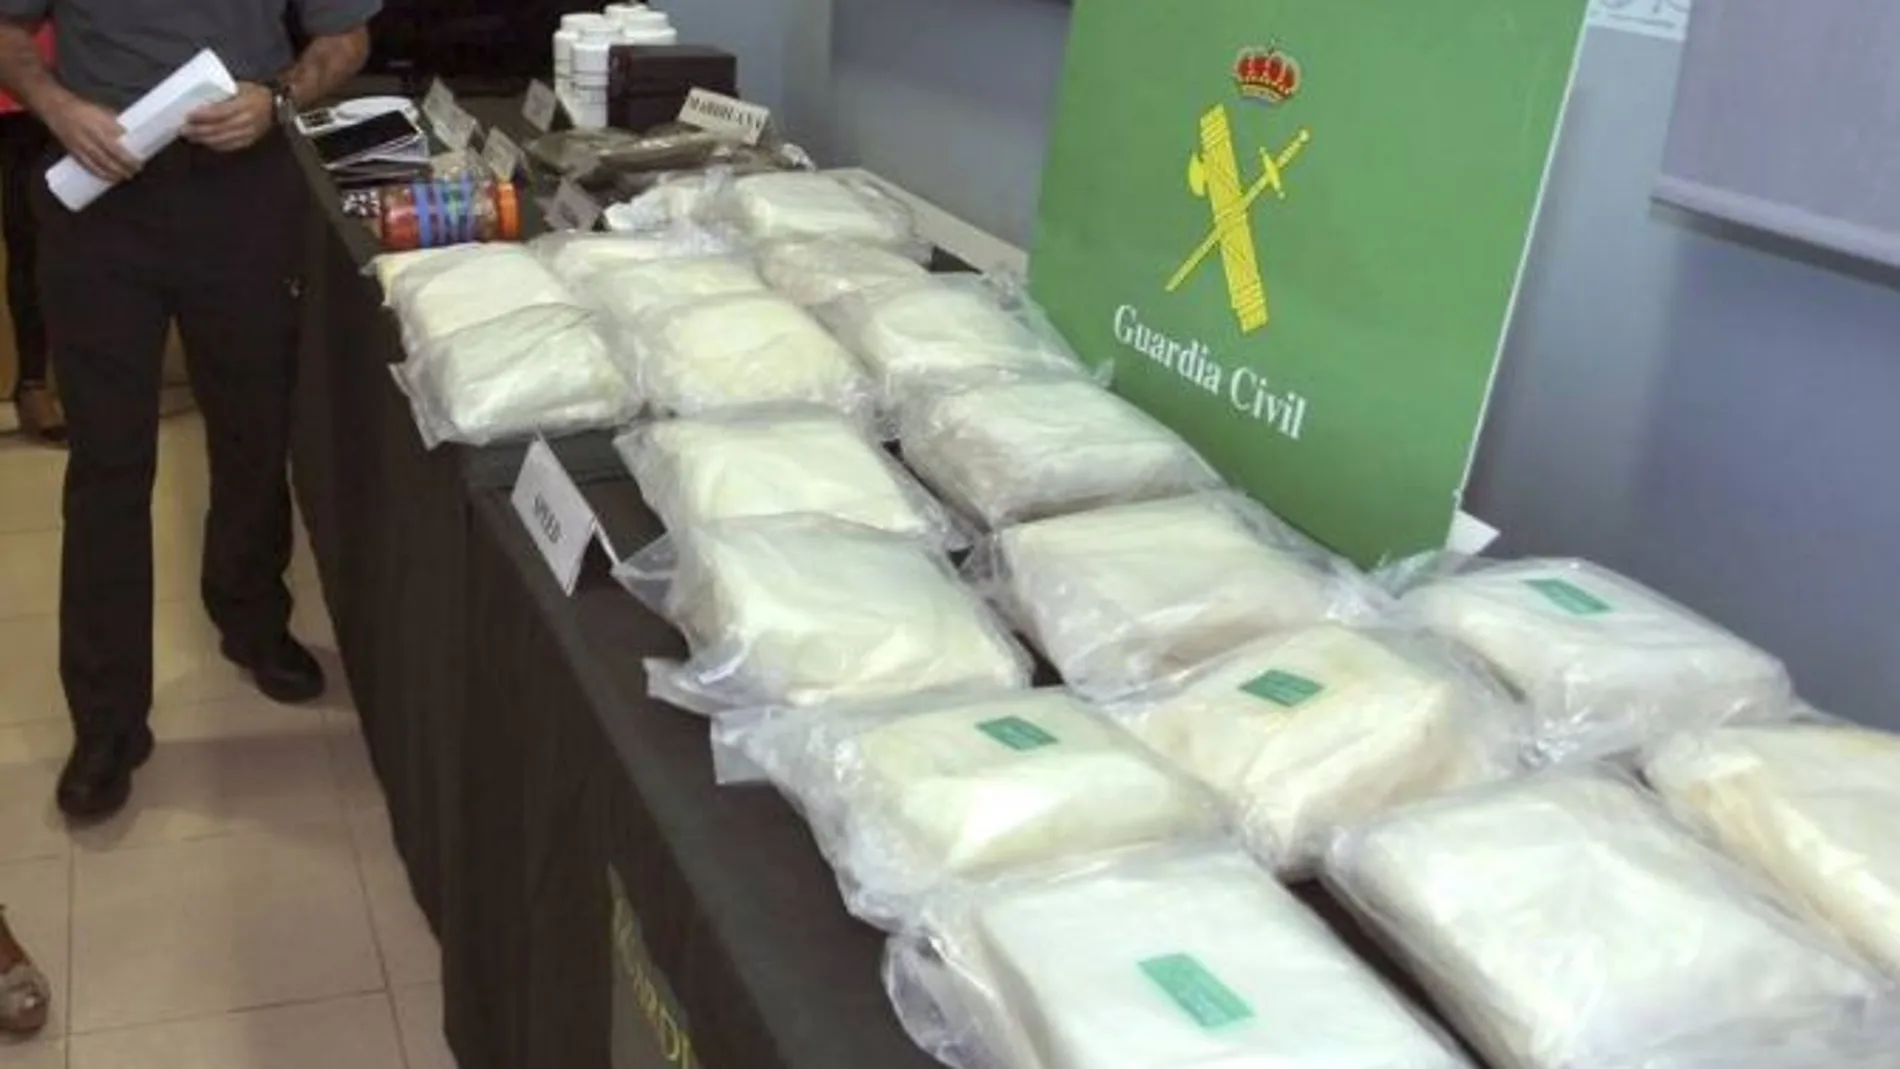 Los agentes han intervenido 54 kilos de "speed", 300 gramos de heroína, dos kilos de hachís, 10.000 euros en efectivo y dos vehículos.